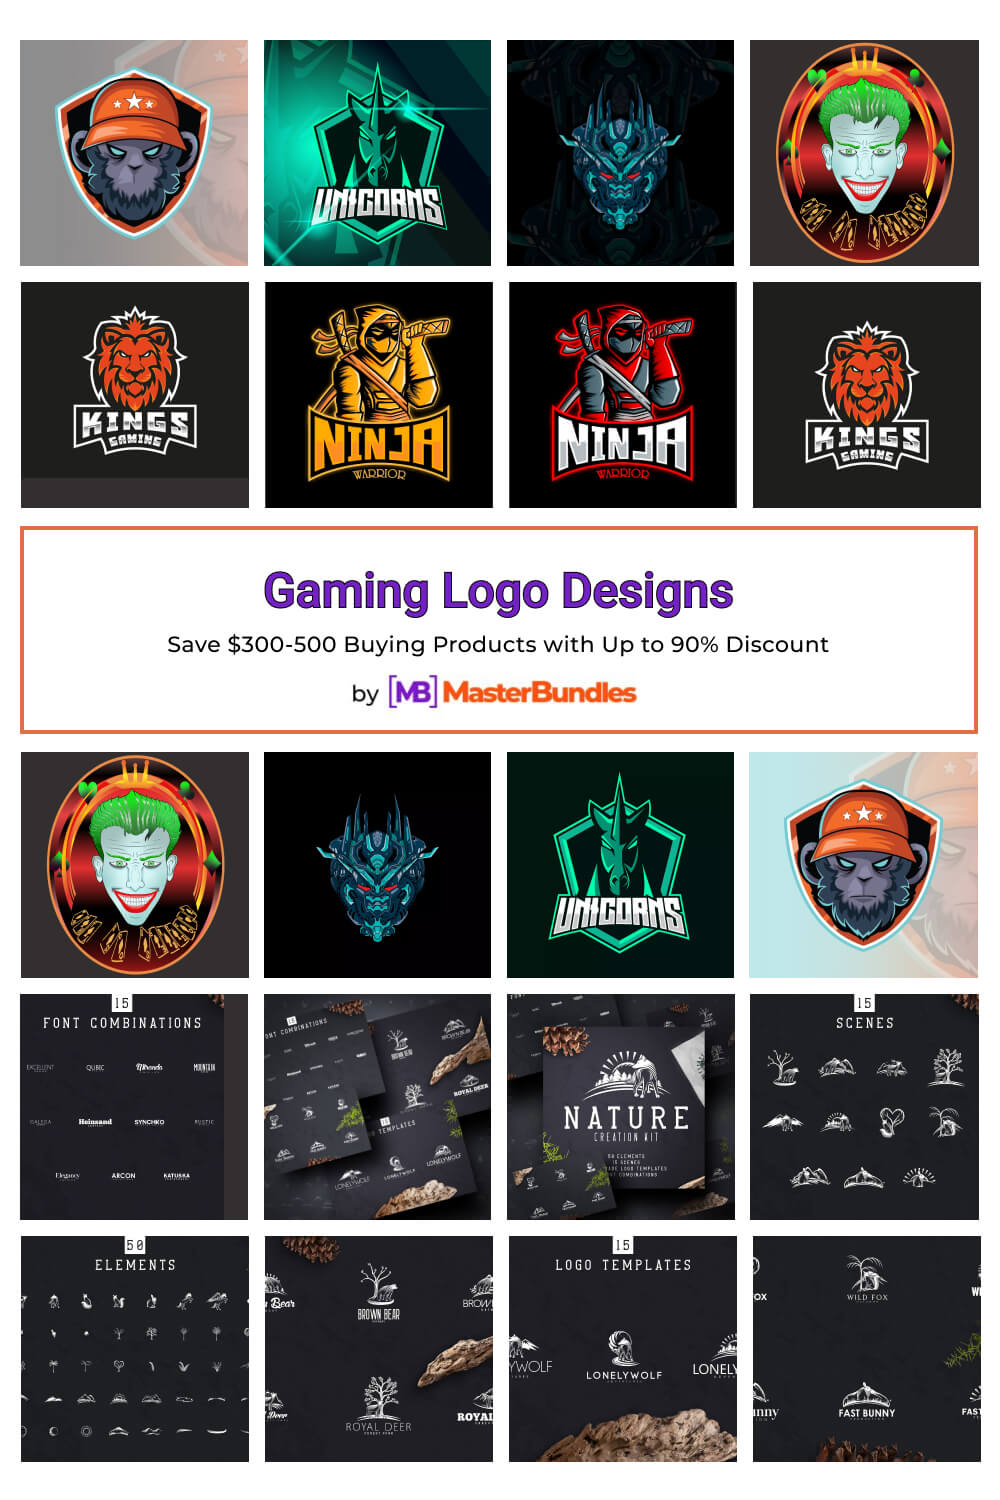 gaming logo designs pinterest image.